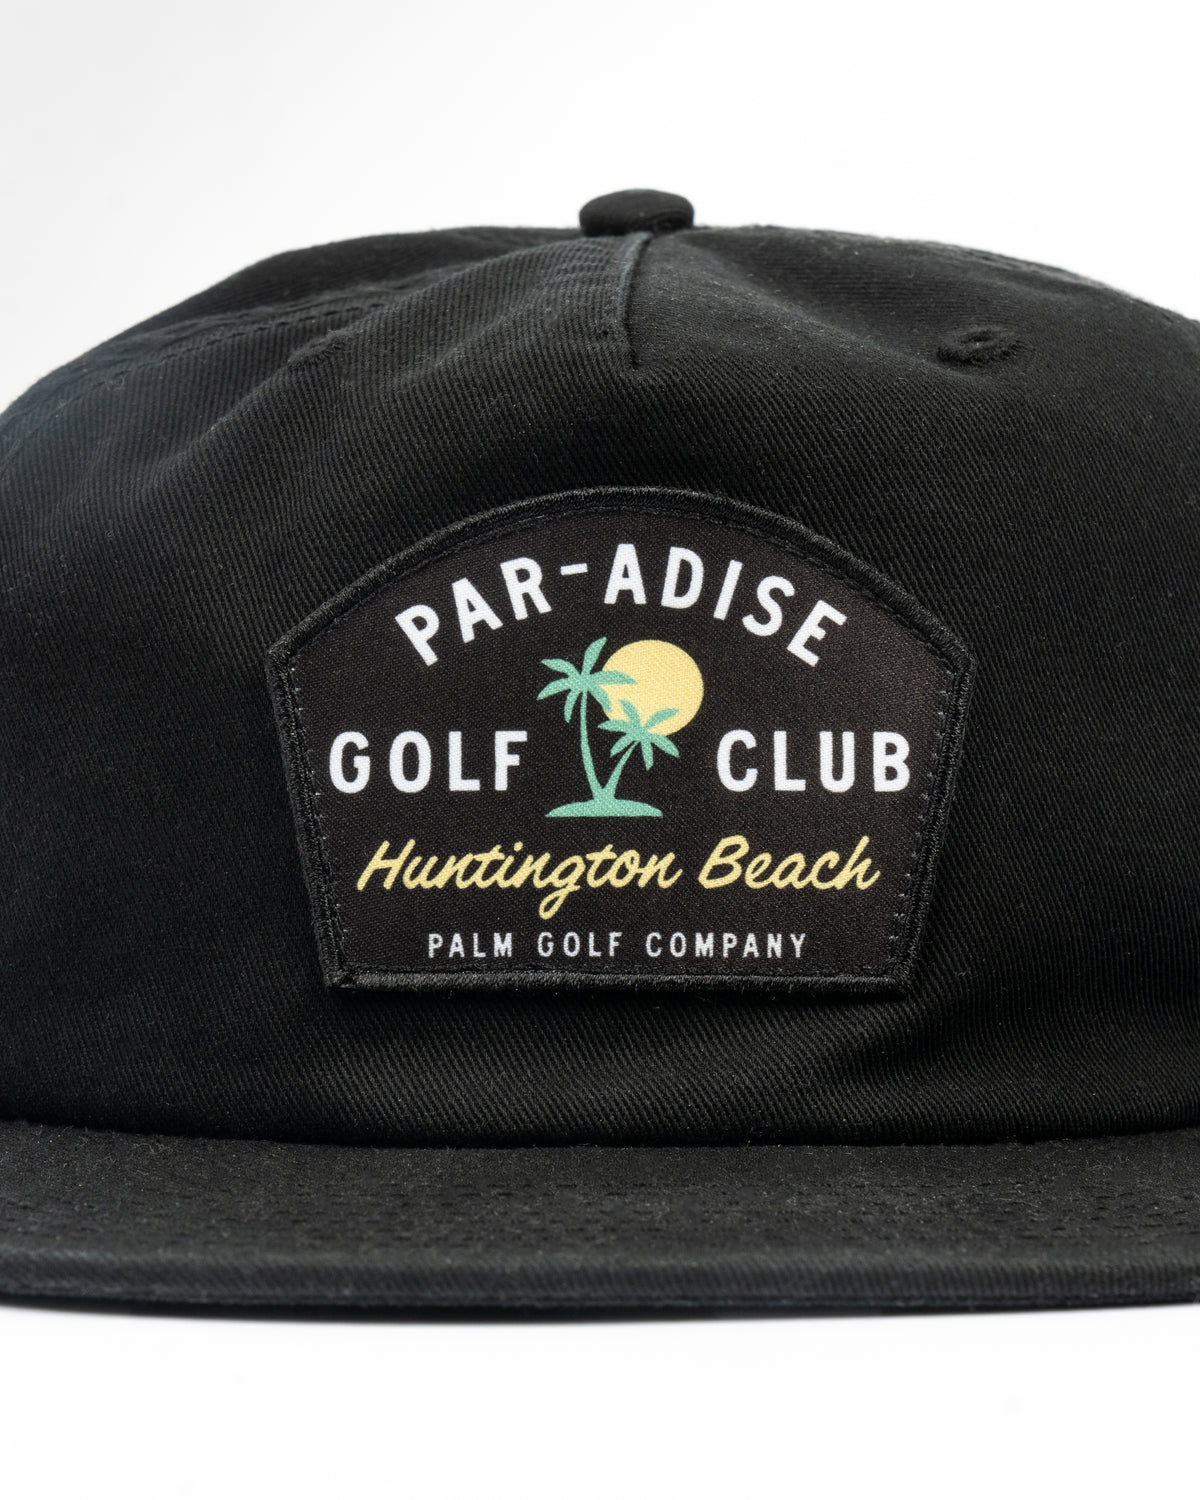 Par-adise GC Strapback (Unstructured) - Palm Golf Co.